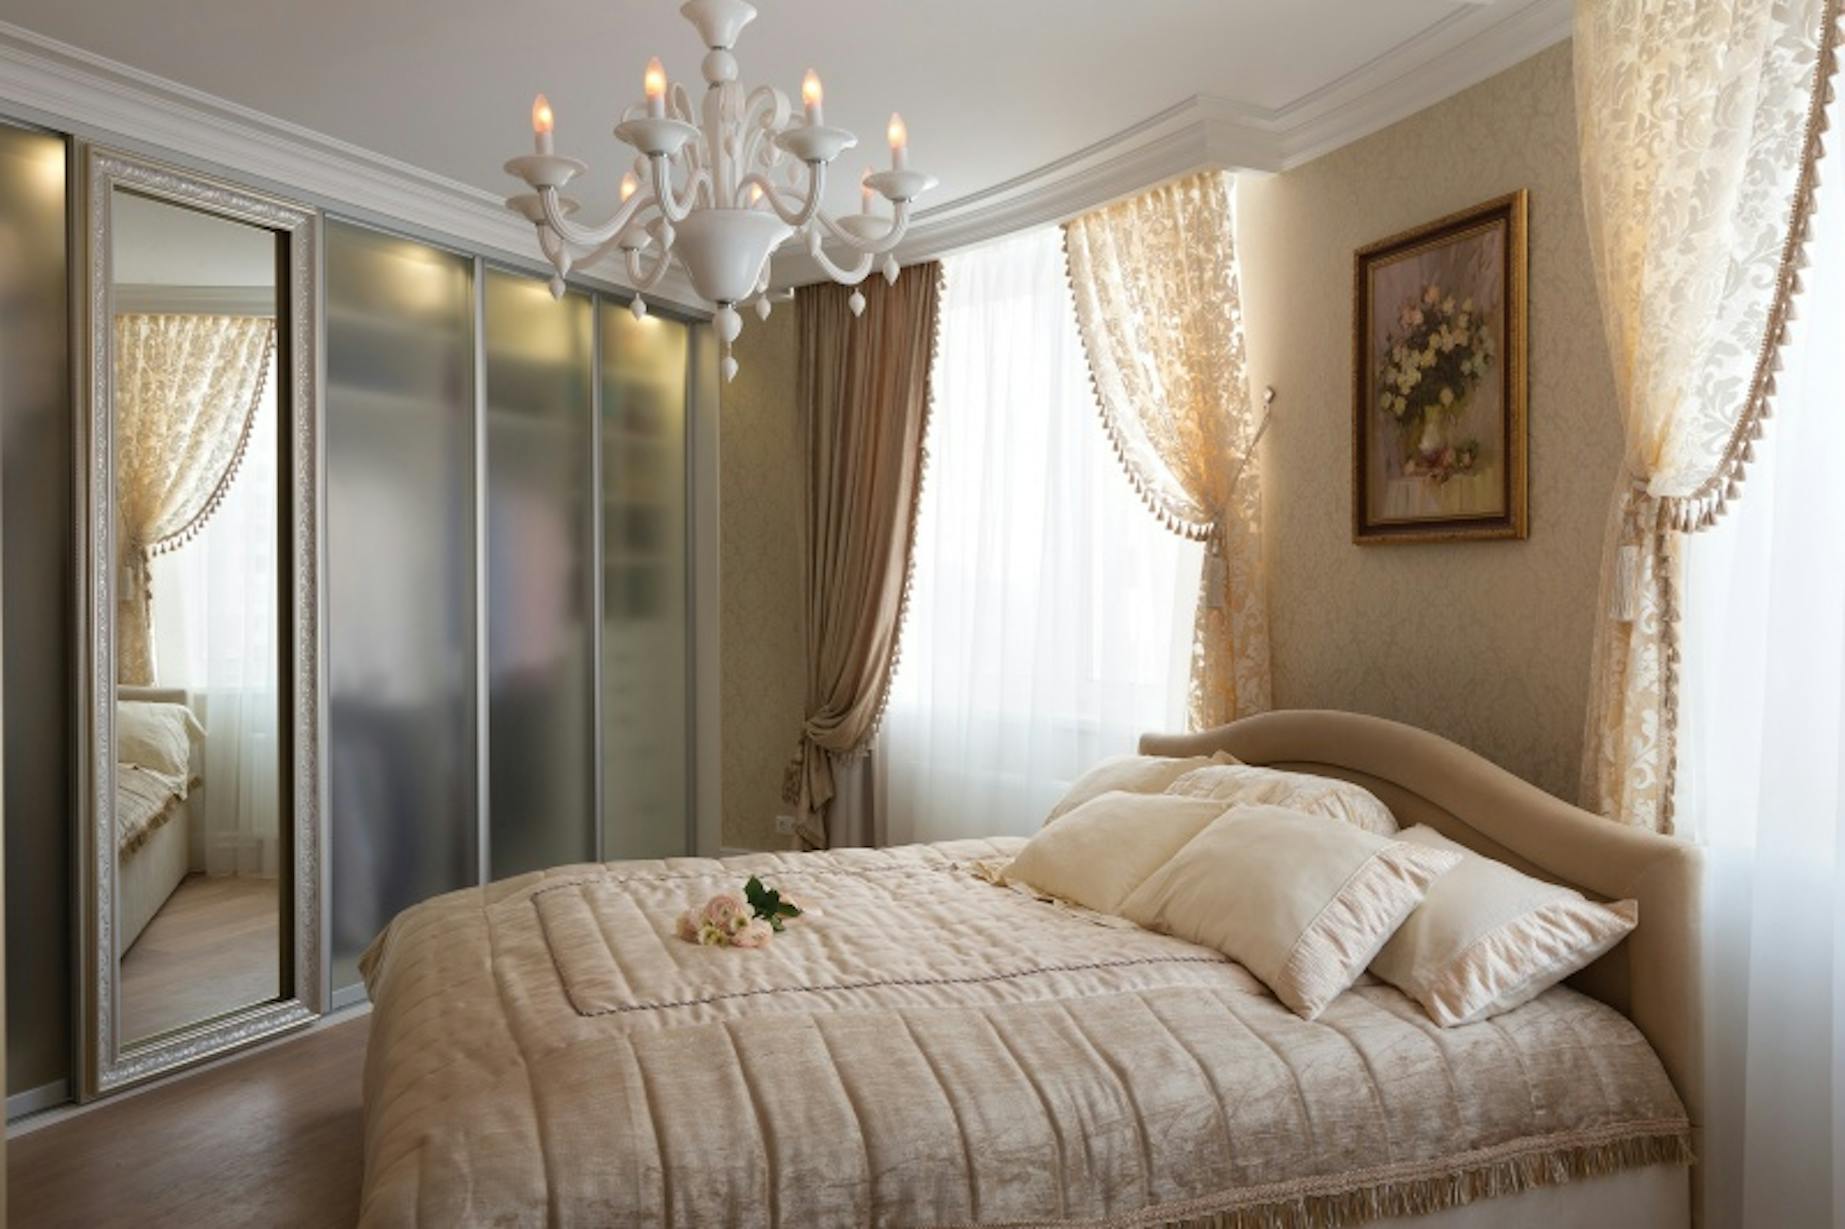 Нельзя ставить кровать напротив зеркала. Спальня французский стиль Люкс Ритц. Дизайн спальни в светлых тонах классический стиль. Зеркало напротив кровати в спальне. Бежевые классические шторы в спальню.